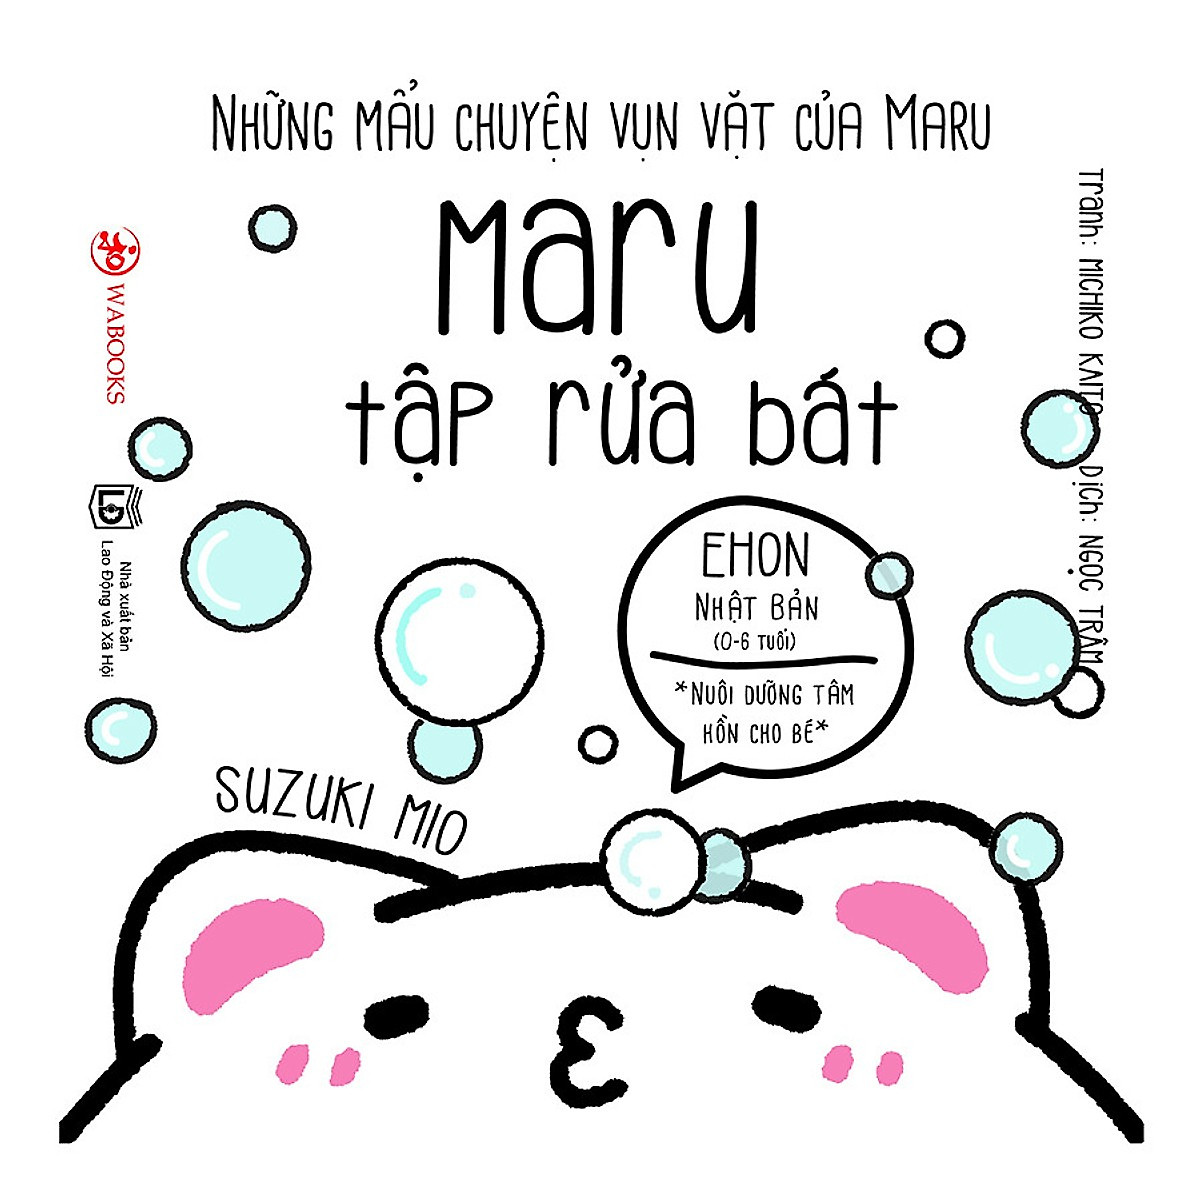 Ehon Nhật Bản - Nuôi dưỡng tâm hồn cho bé - Những mẩu chuyện vụn vặt của Maru ( trọn bộ 6 cuốn ) tặng kèm 1 tẩy hình con vật như hình